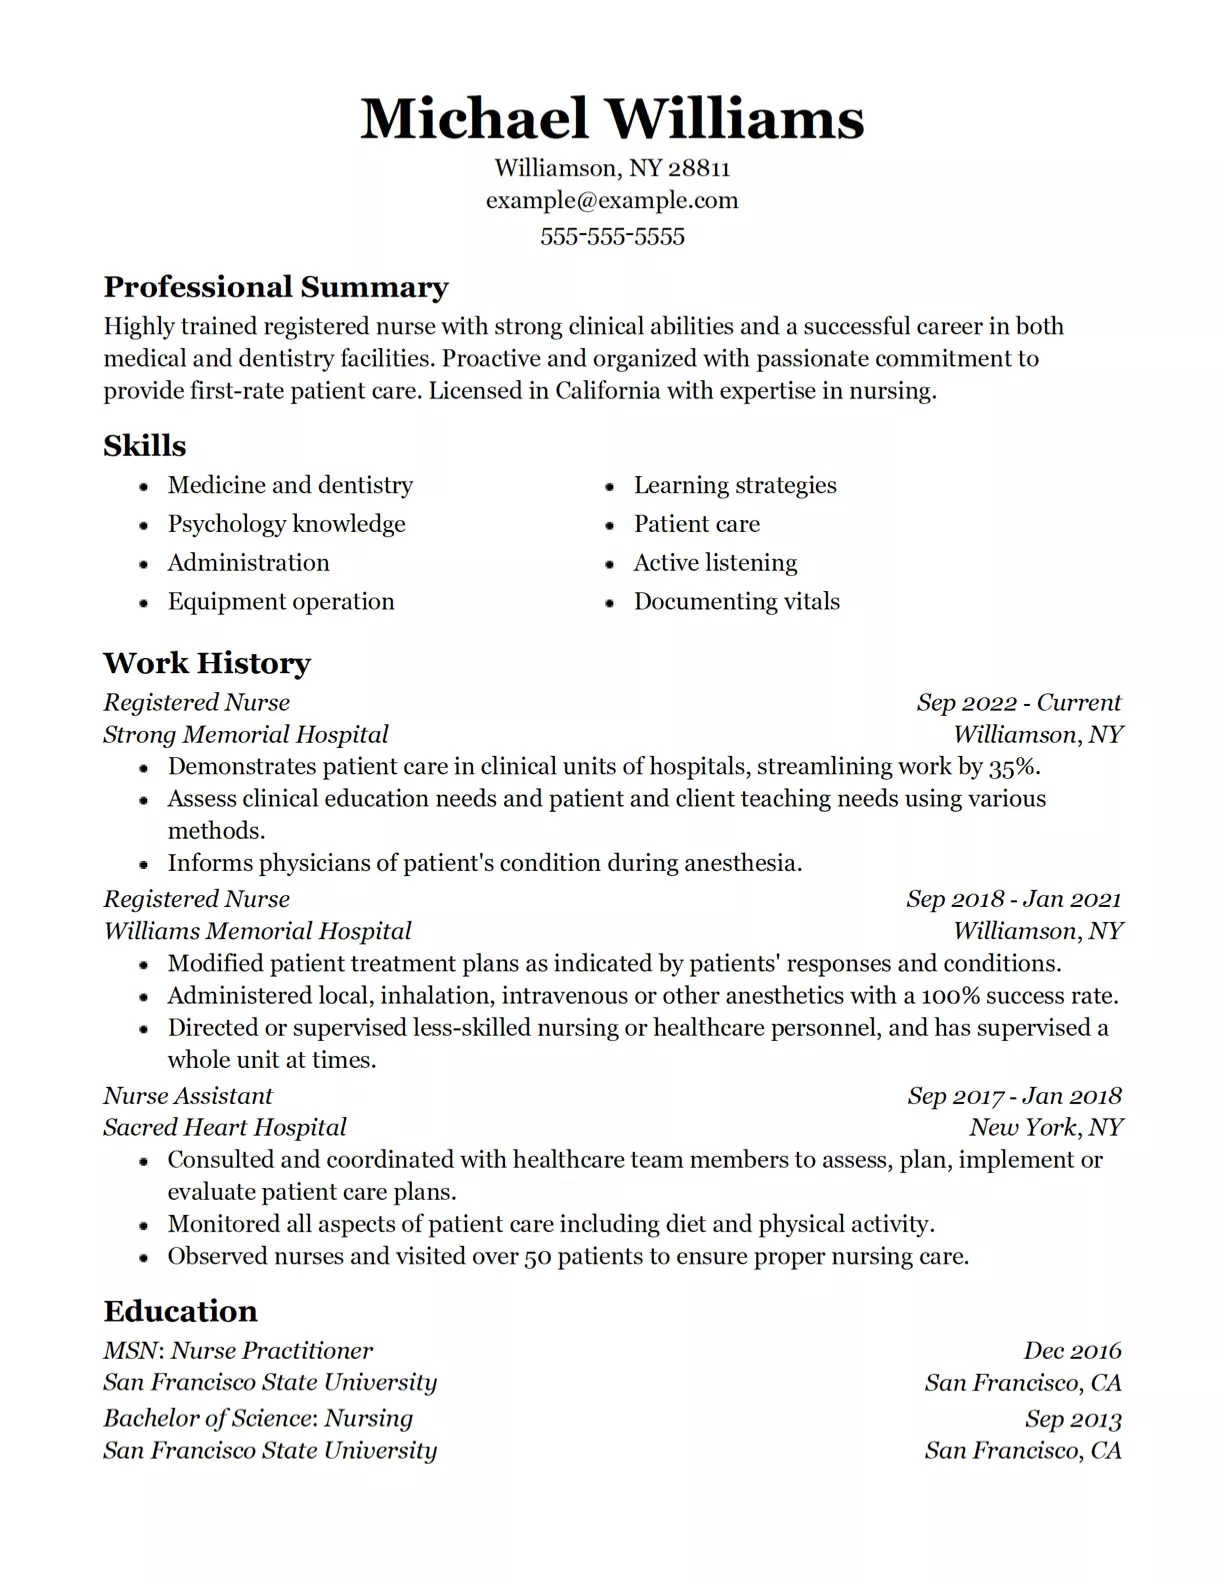 Resume design